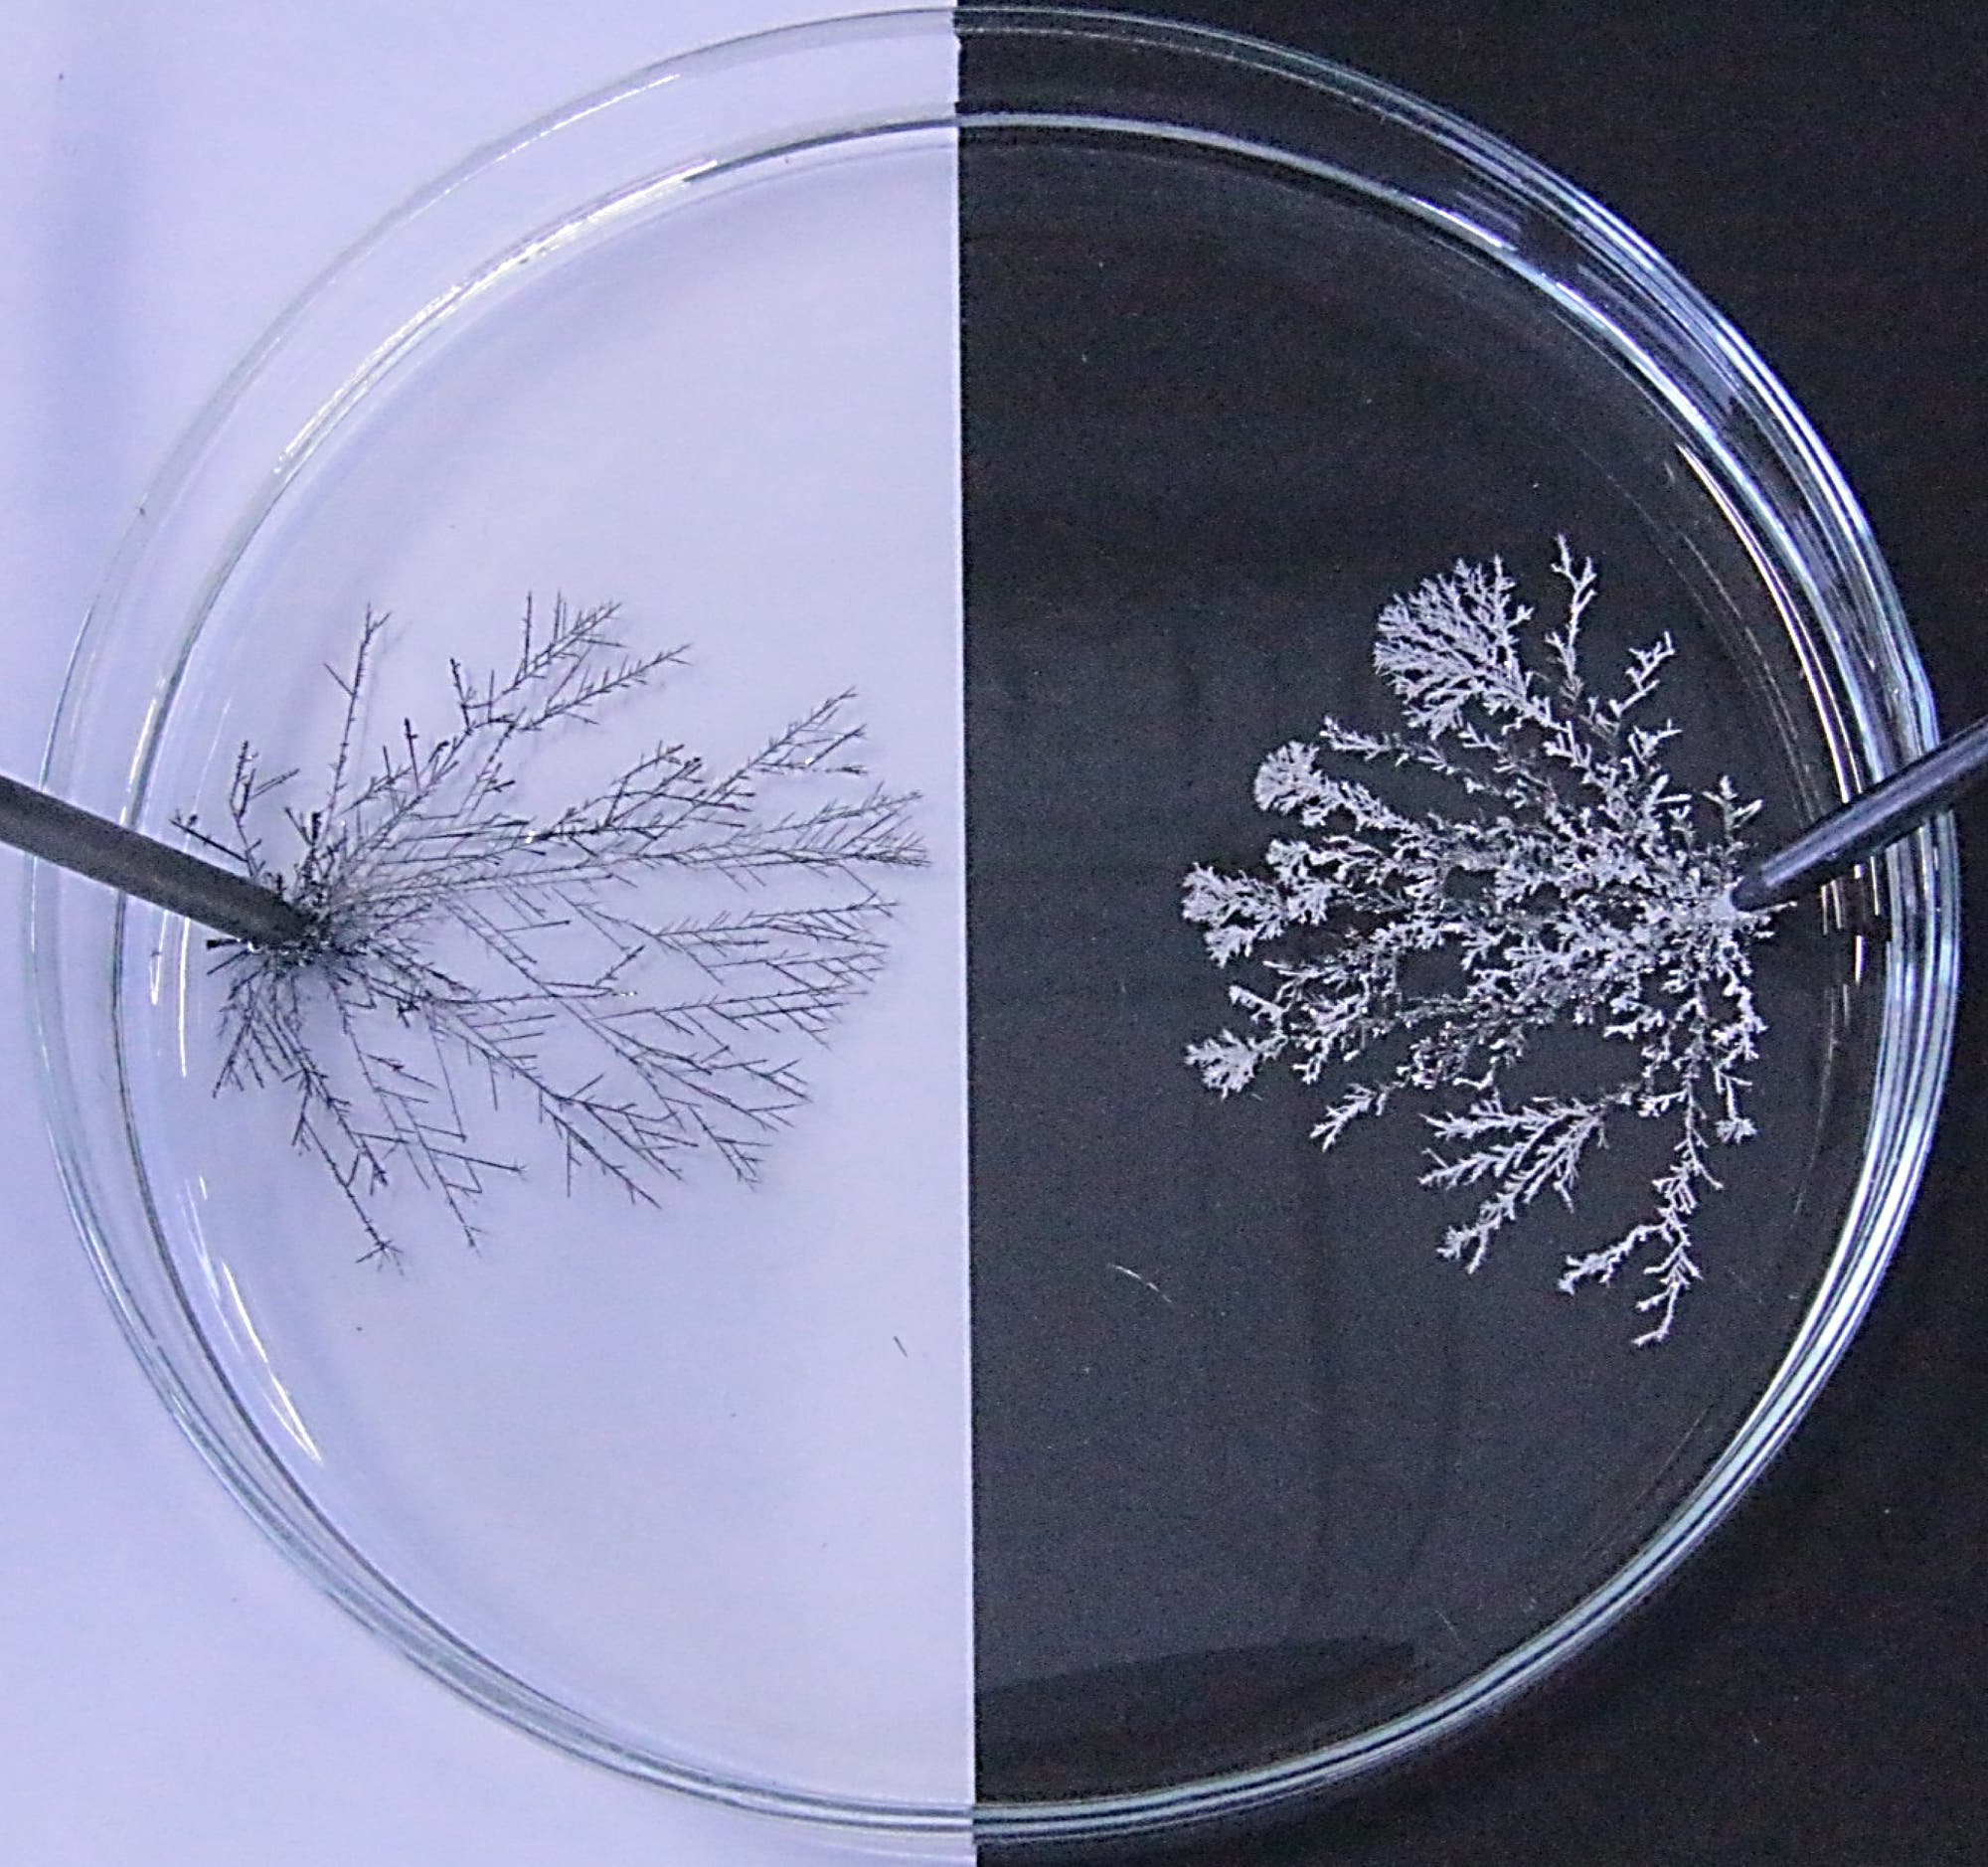 En la placa de Petri hay dos electrodos negros a la izquierda y a la derecha con árboles plateados ramificados creciendo en ellos.